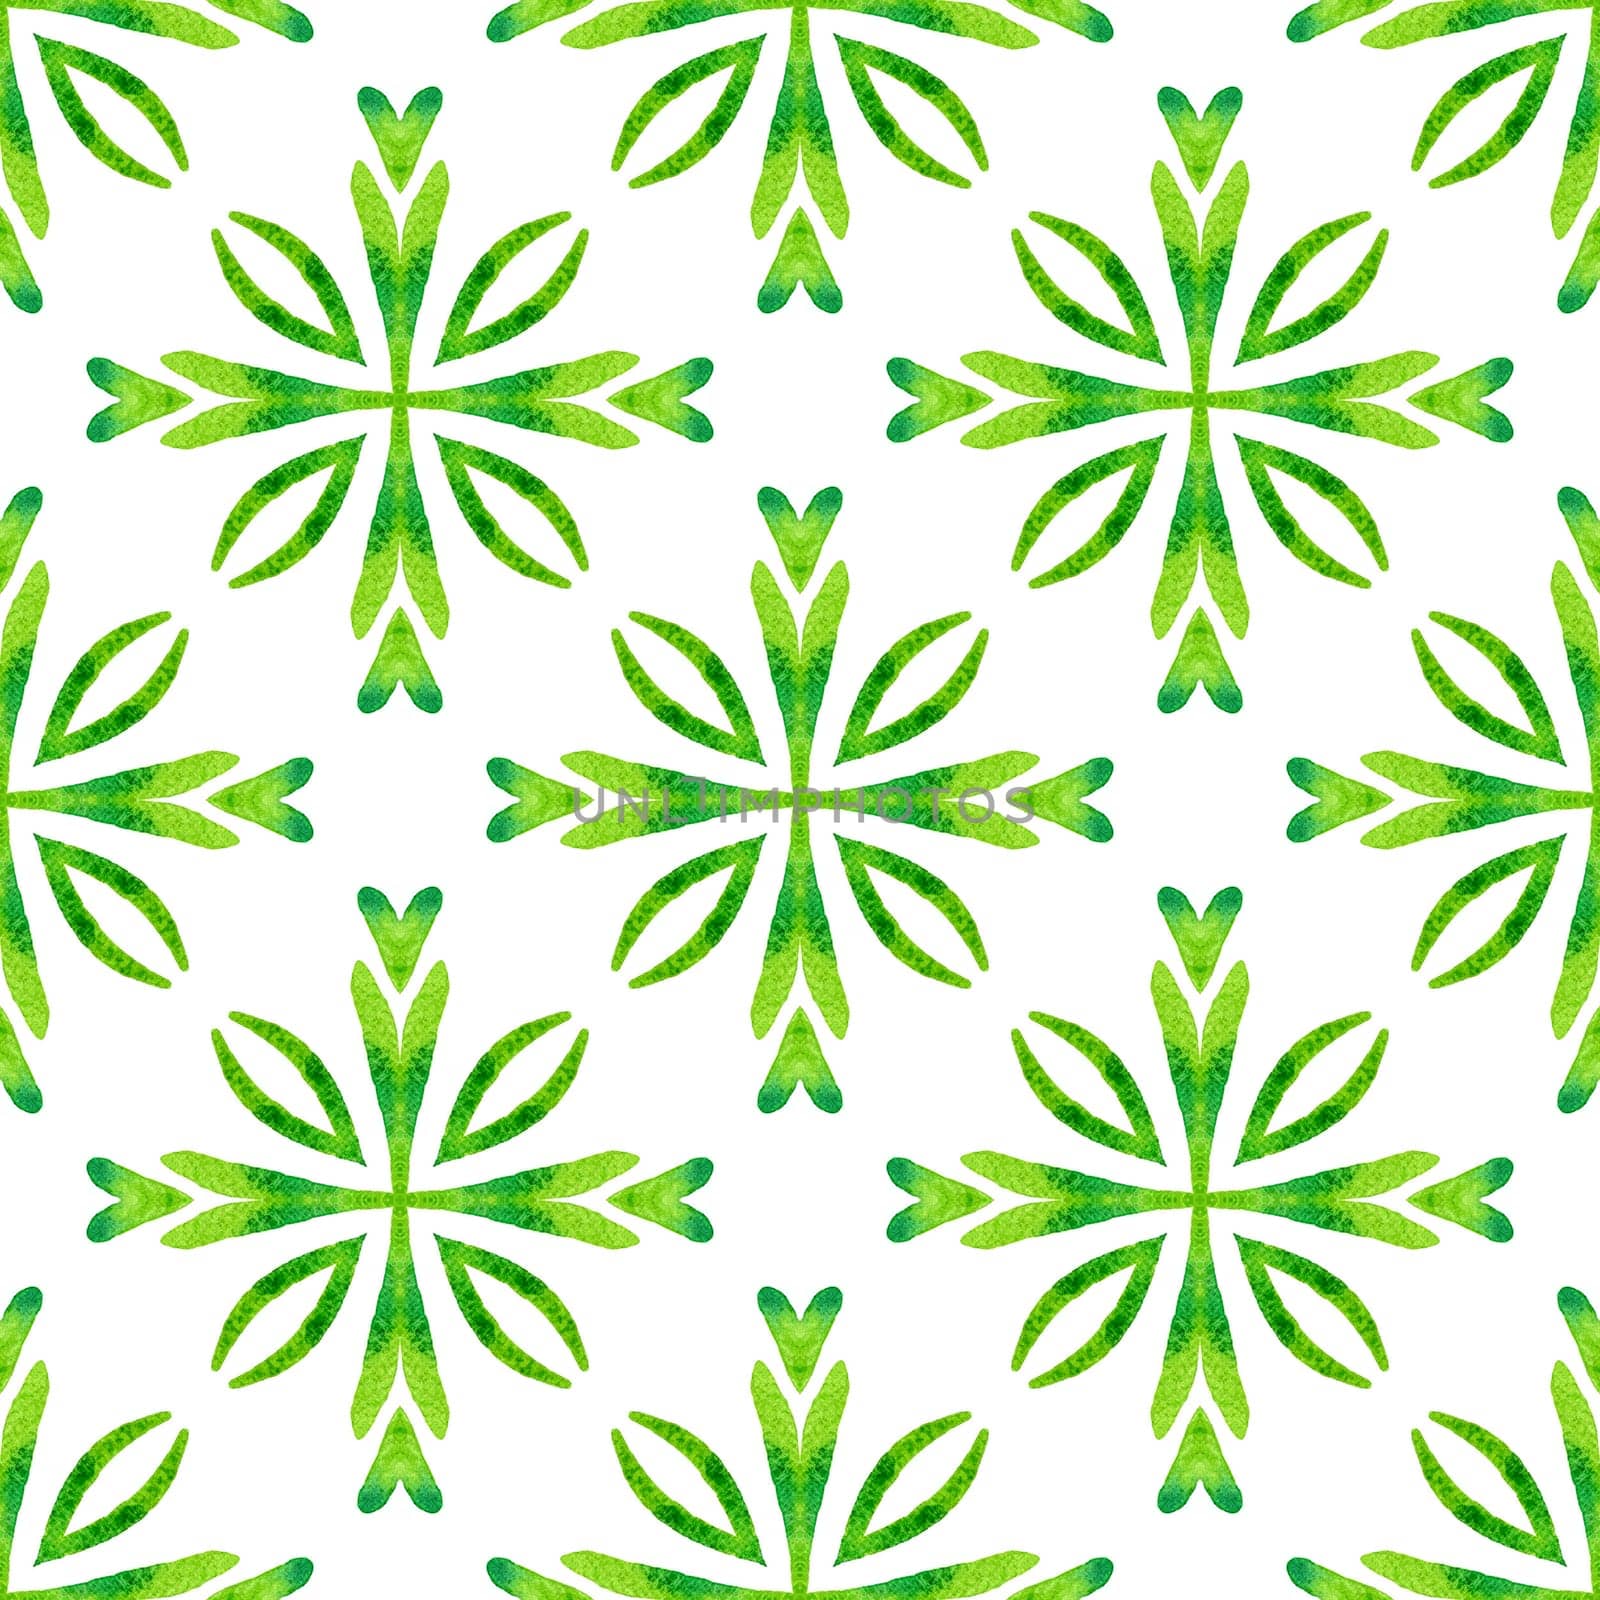 Hand drawn green mosaic seamless border. Green by beginagain